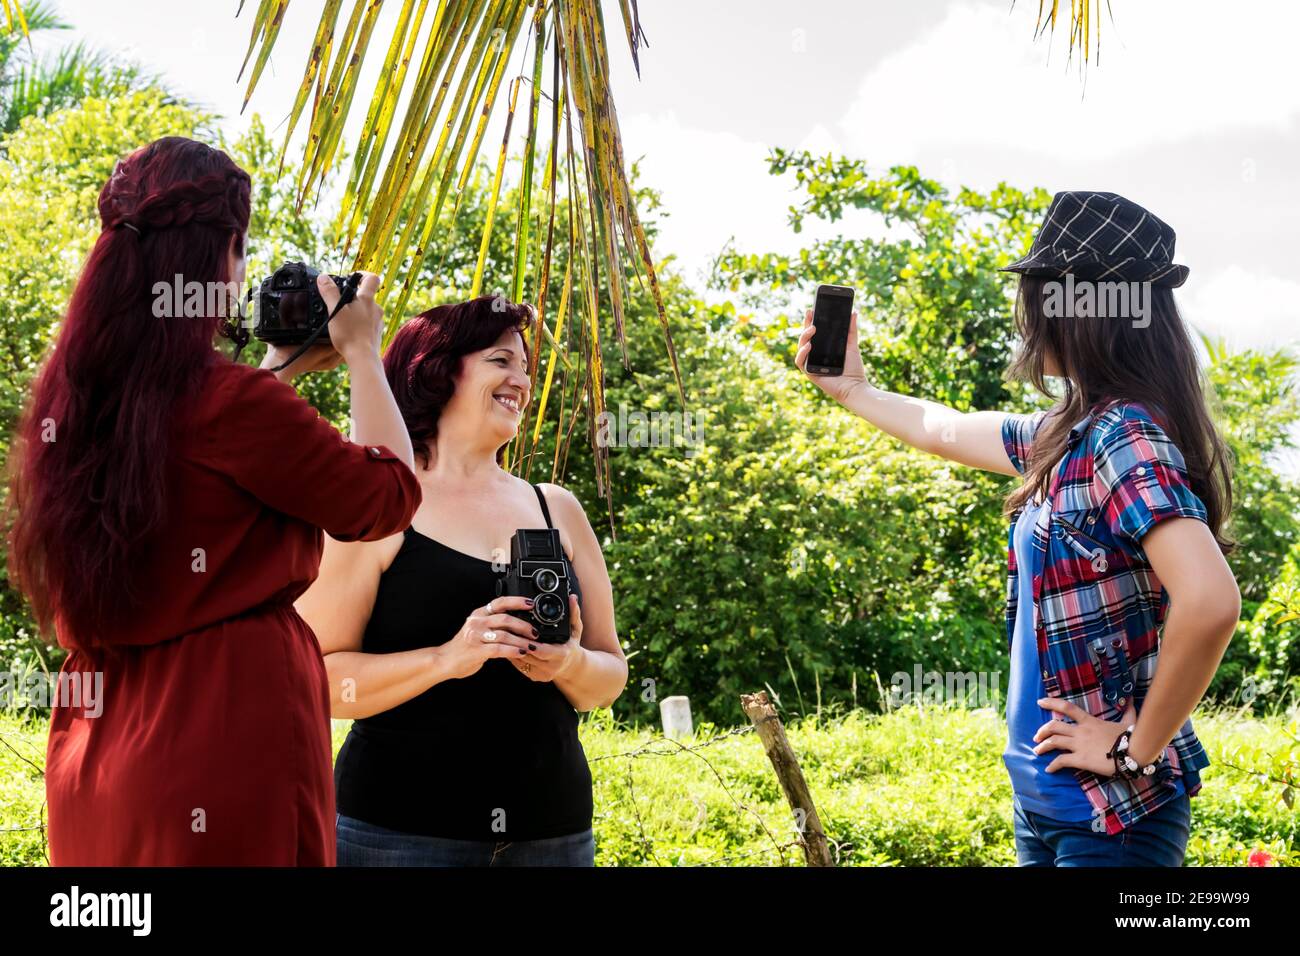 Tre fotografi cubani cresciuti di diverse generazioni immagini all'aperto insieme, uno di loro sta scattando un selfie Foto Stock